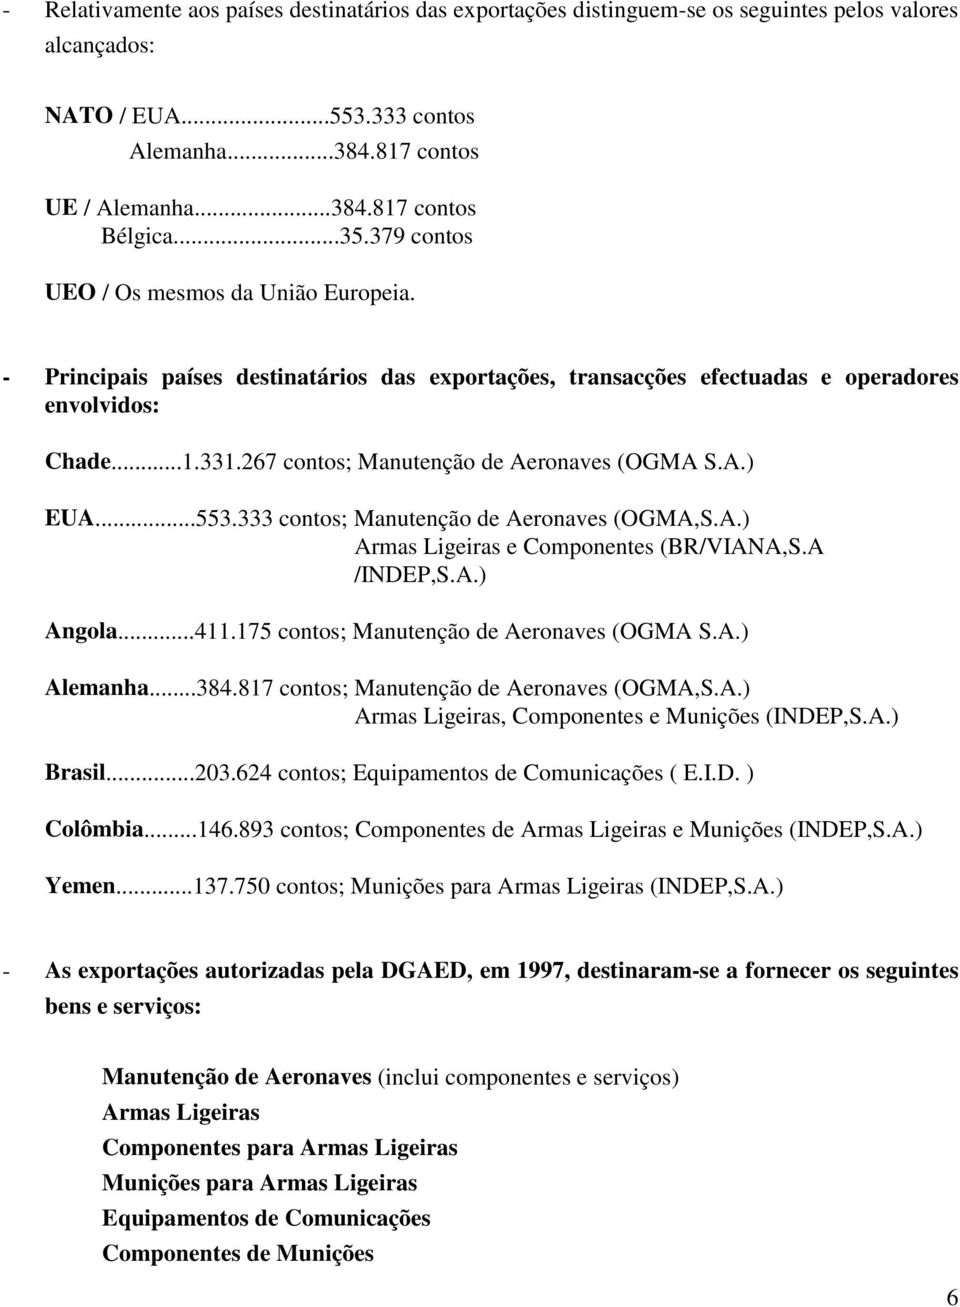 267 contos; Manutenção de Aeronaves (OGMA S.A.) EUA...553.333 contos; Manutenção de Aeronaves (OGMA,S.A.) Armas Ligeiras e Componentes (BR/VIANA,S.A /INDEP,S.A.) Angola...411.